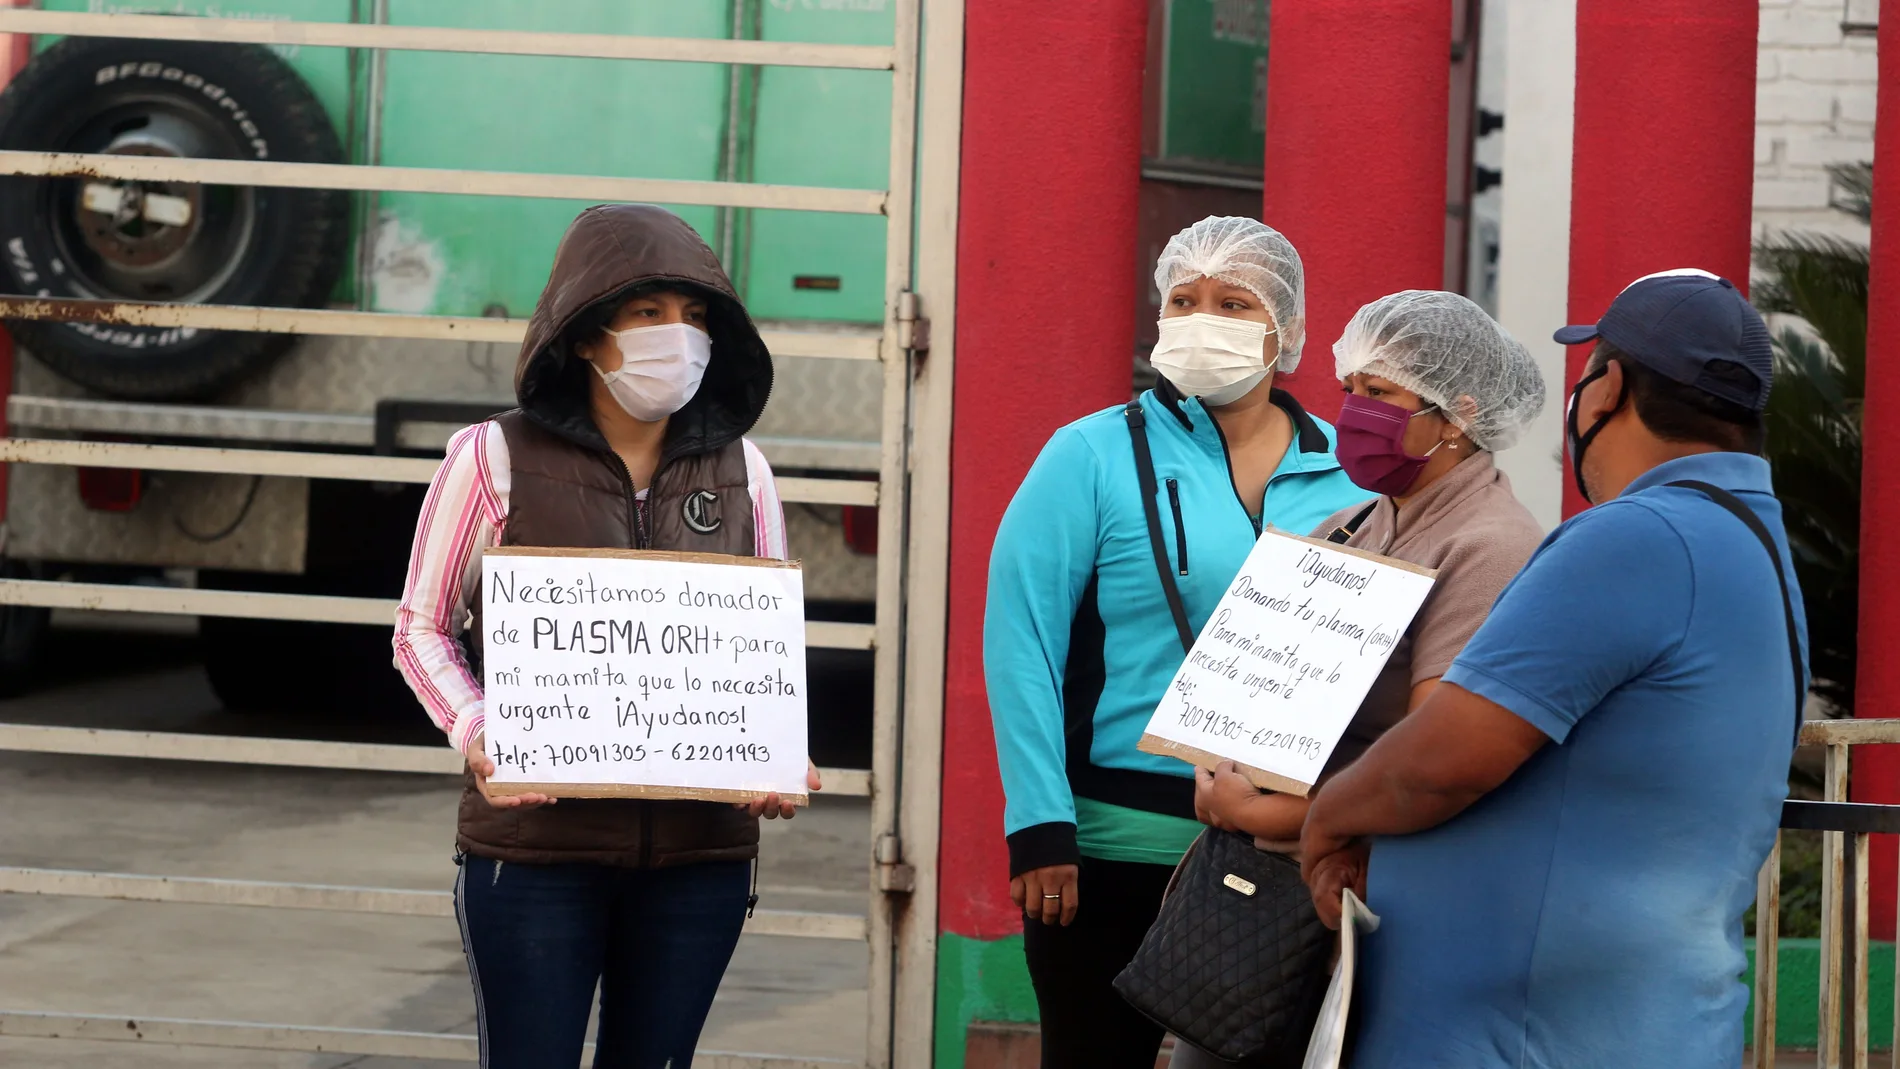 "Busco plasma", la última esperanza ante la COVID-19 en Bolivia